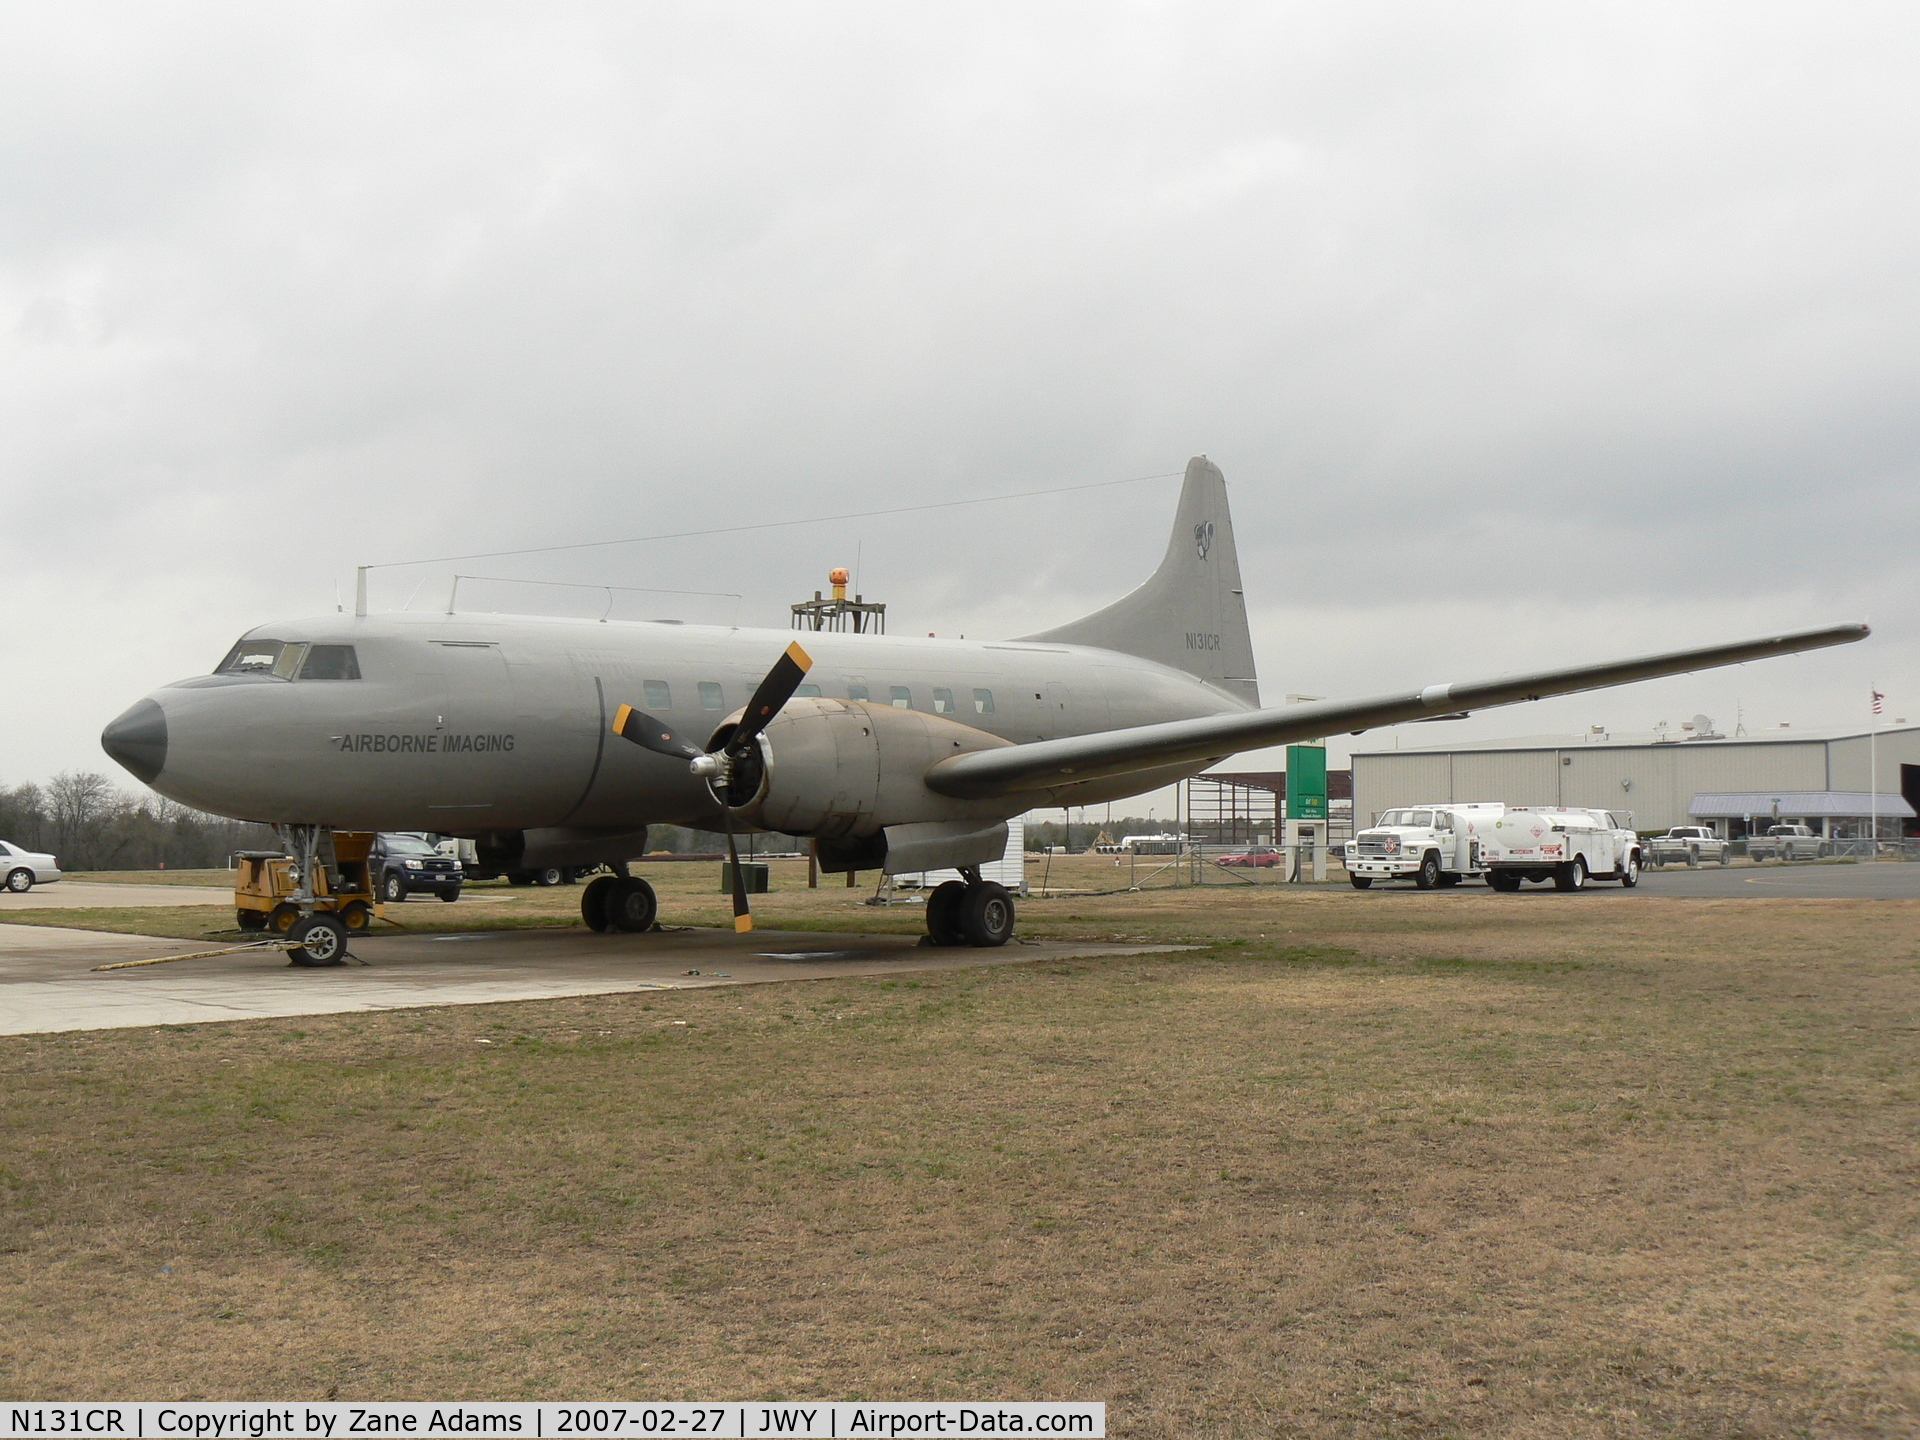 N131CR, 1955 Convair C-131B Samaritan C/N 271, Airborne Imaging Convair C-131B at Midlothian Airport.